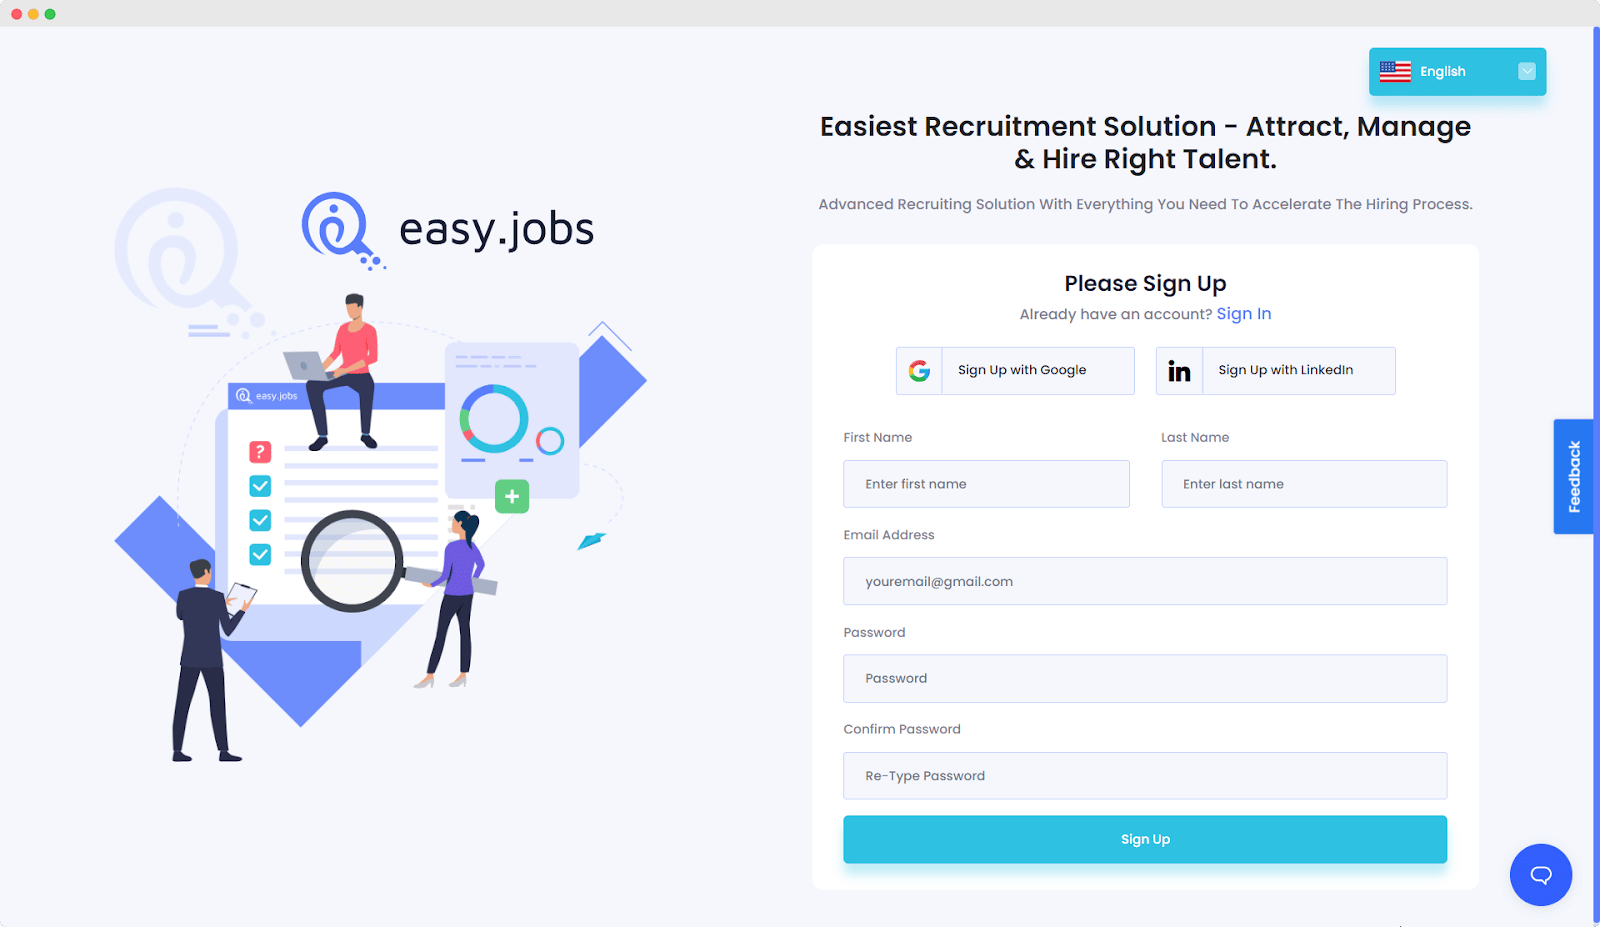 New Company Inside Easy.Jobs?